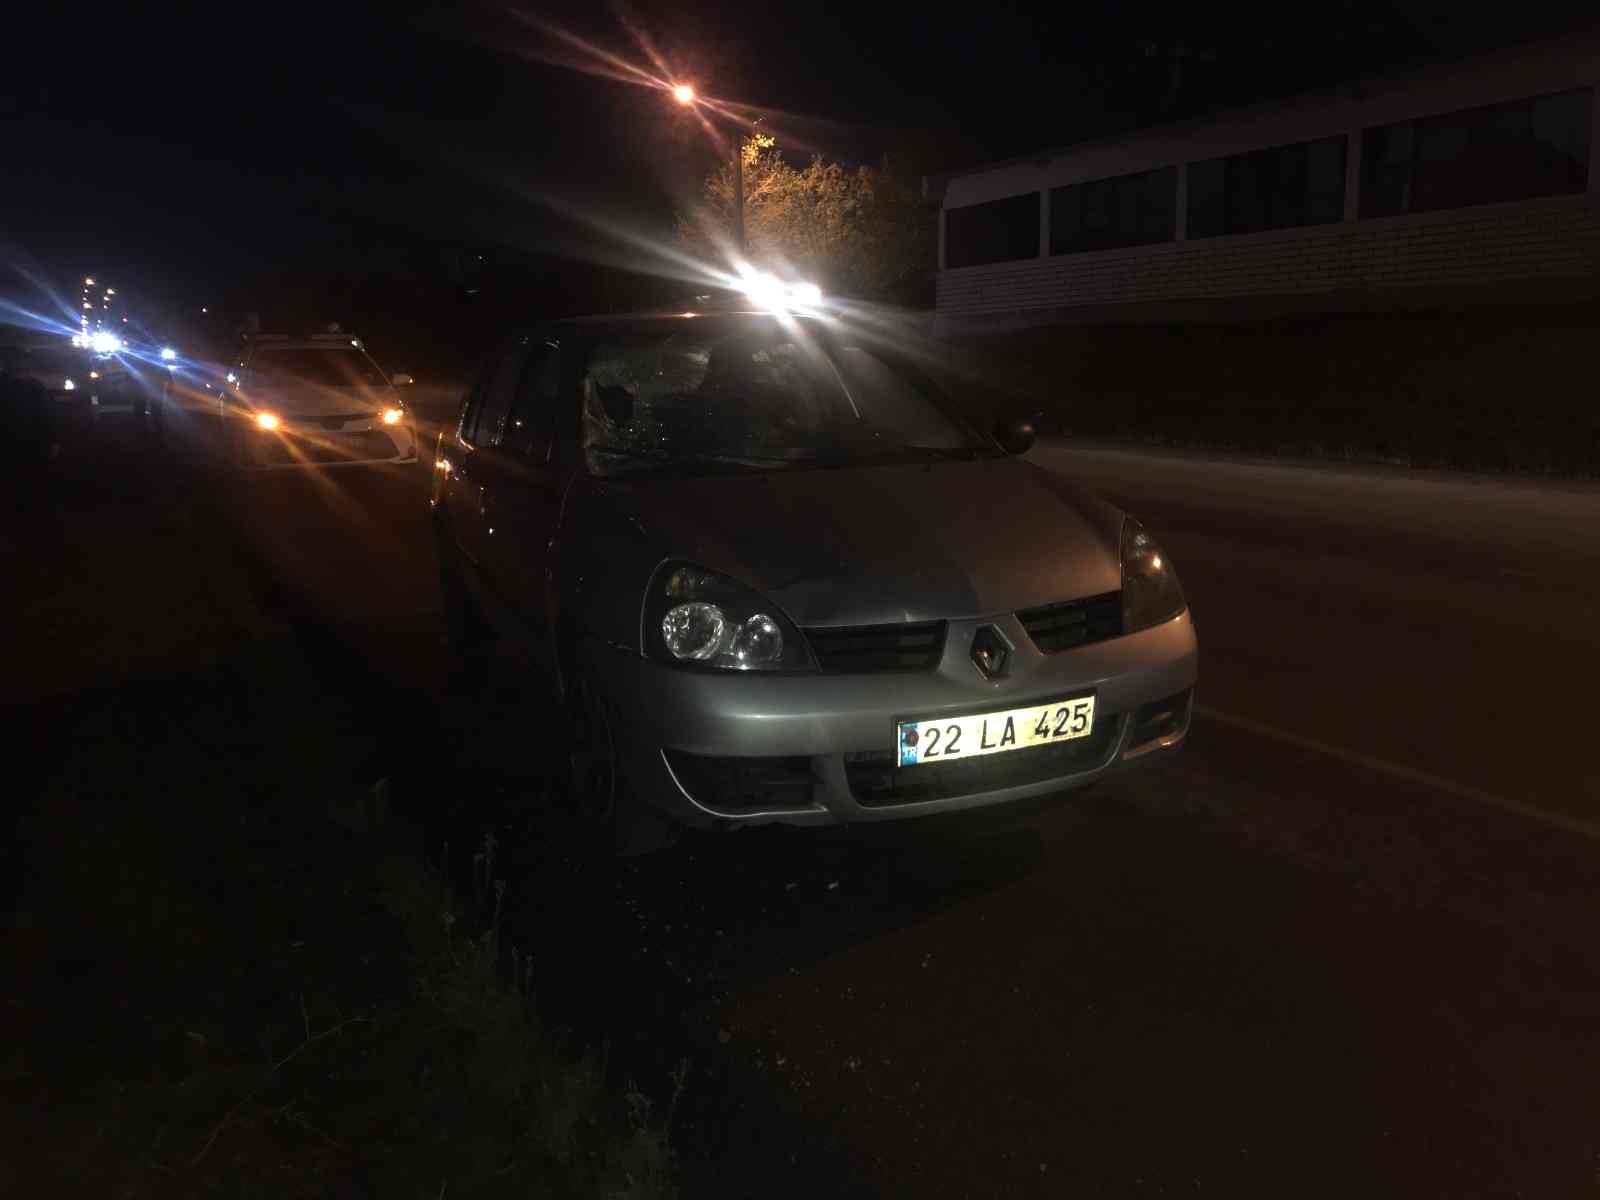 Edirne’de otomobilin çarptığı yaya ağır yaralandı #edirne